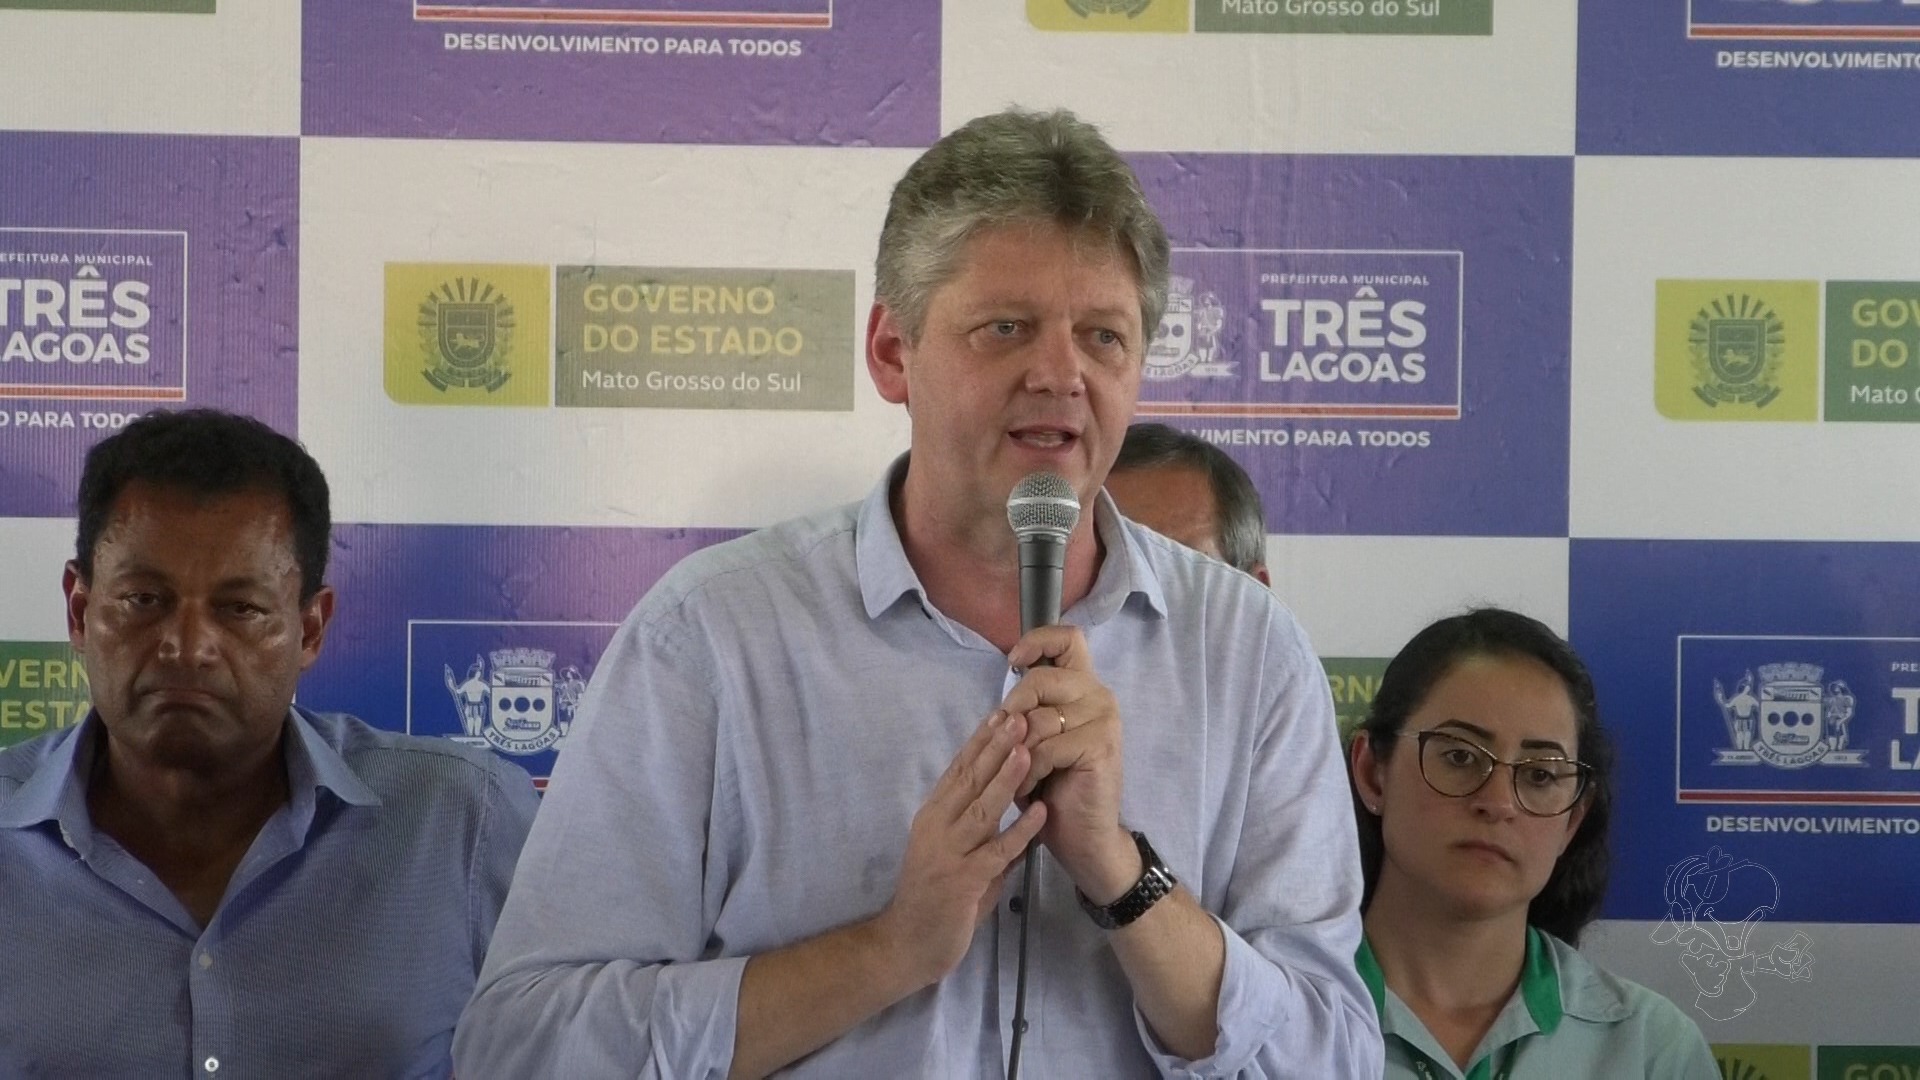 Jaime Verruck – Secretário da Agricultura Familiar do Estado de Mato Grosso do Sul.